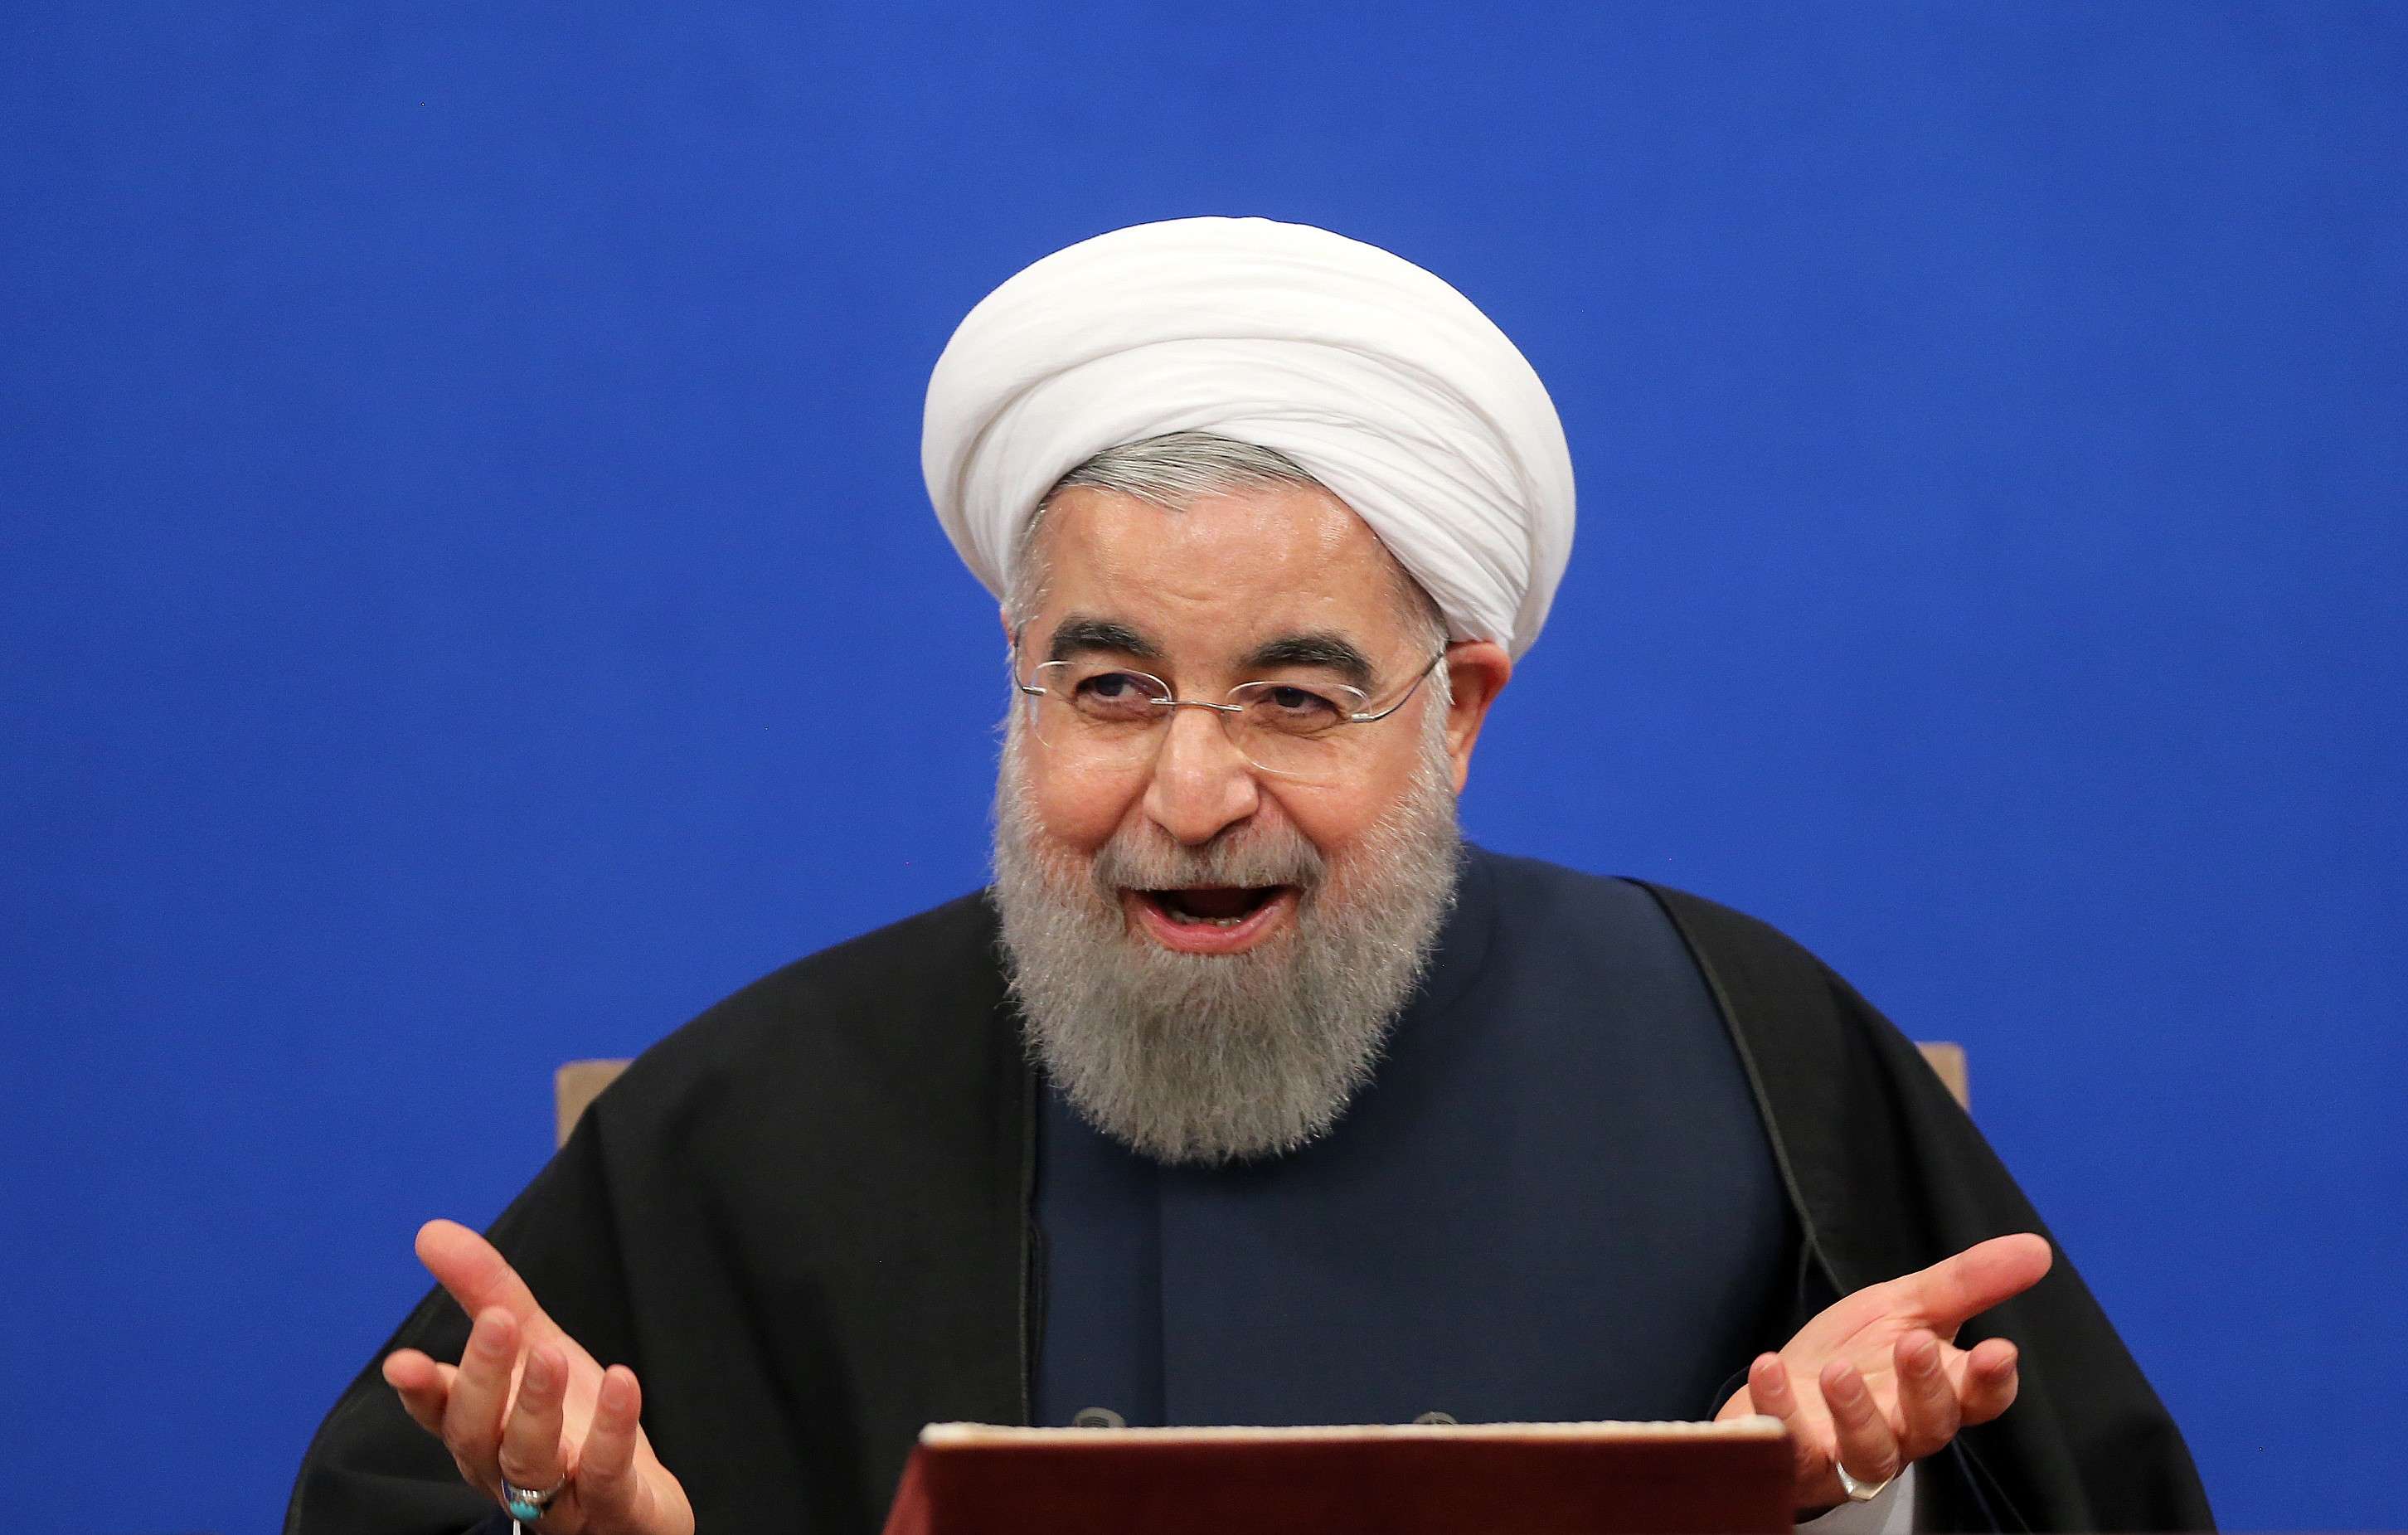 मुस्लिम बाहुल सात देशों पर प्रतिबंध पर भड़के ईरान के राष्ट्रपति बोले, ट्रंप राजनीति में नौसिखिए